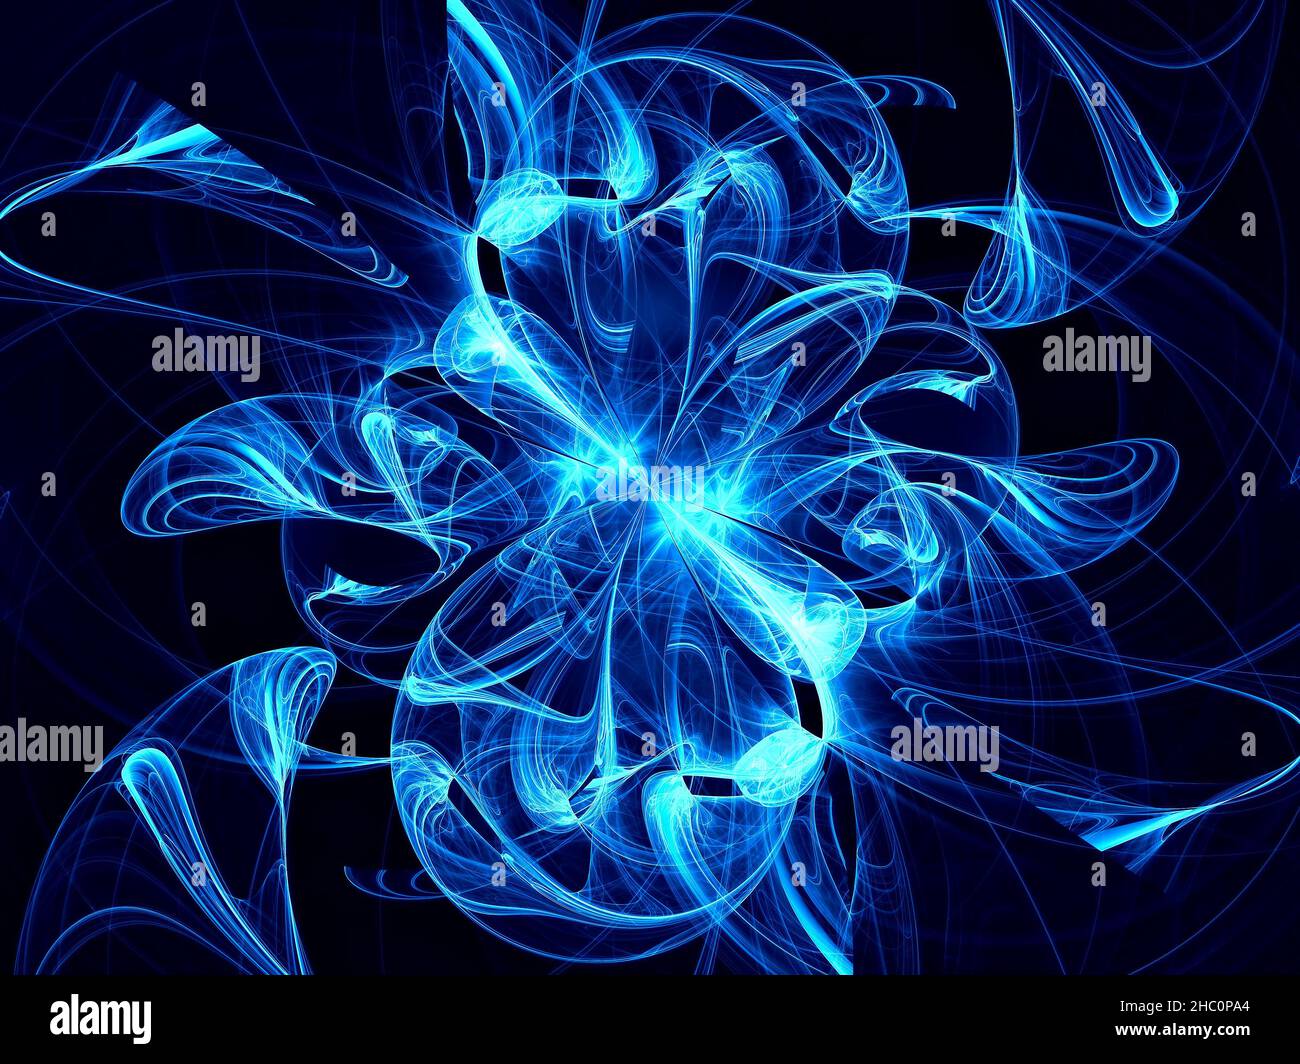 Luisant dans des courbes sombres - illustration abstraite générée par ordinateur Banque D'Images